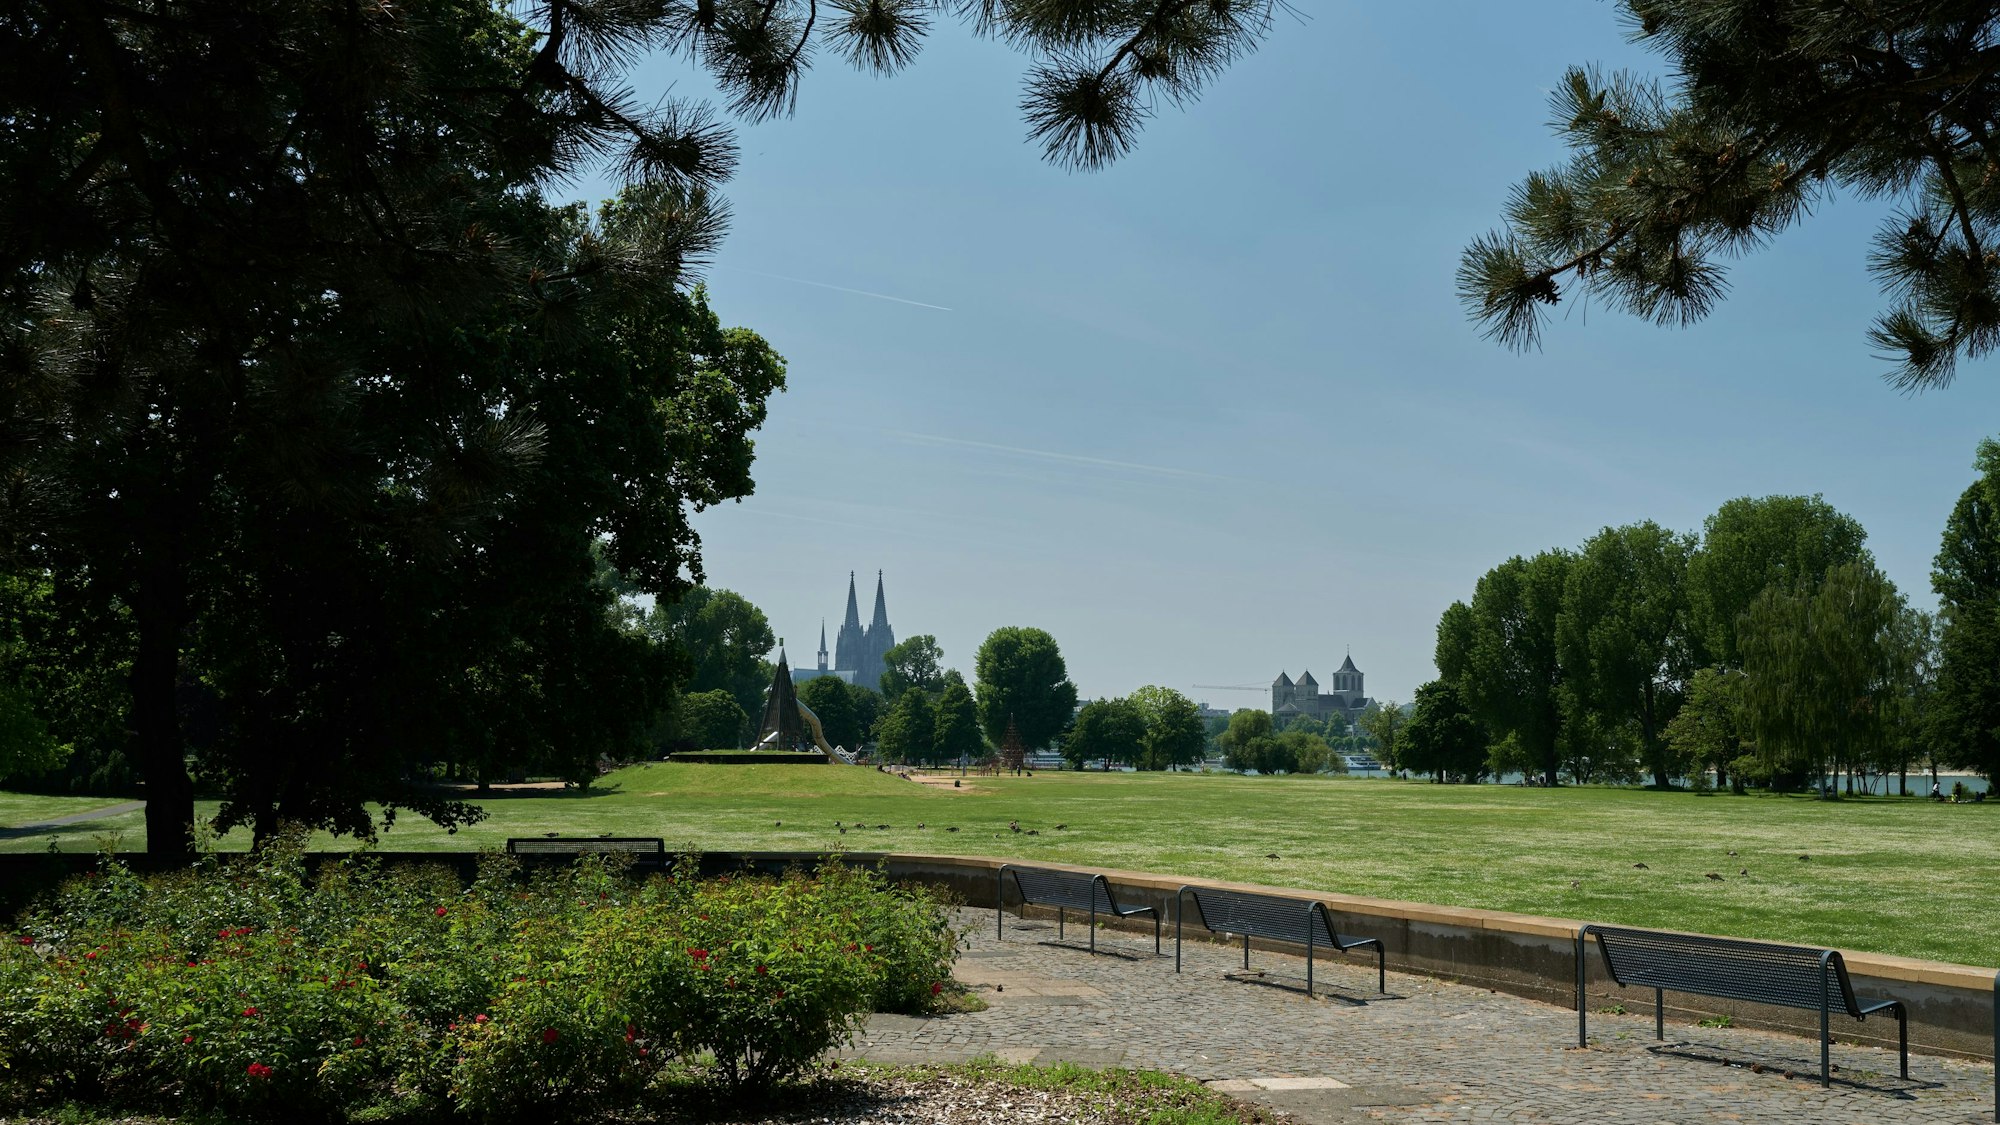 Park mit Wiesen, Bäumen und Bänken, im Hintergrund der Kölner Dom